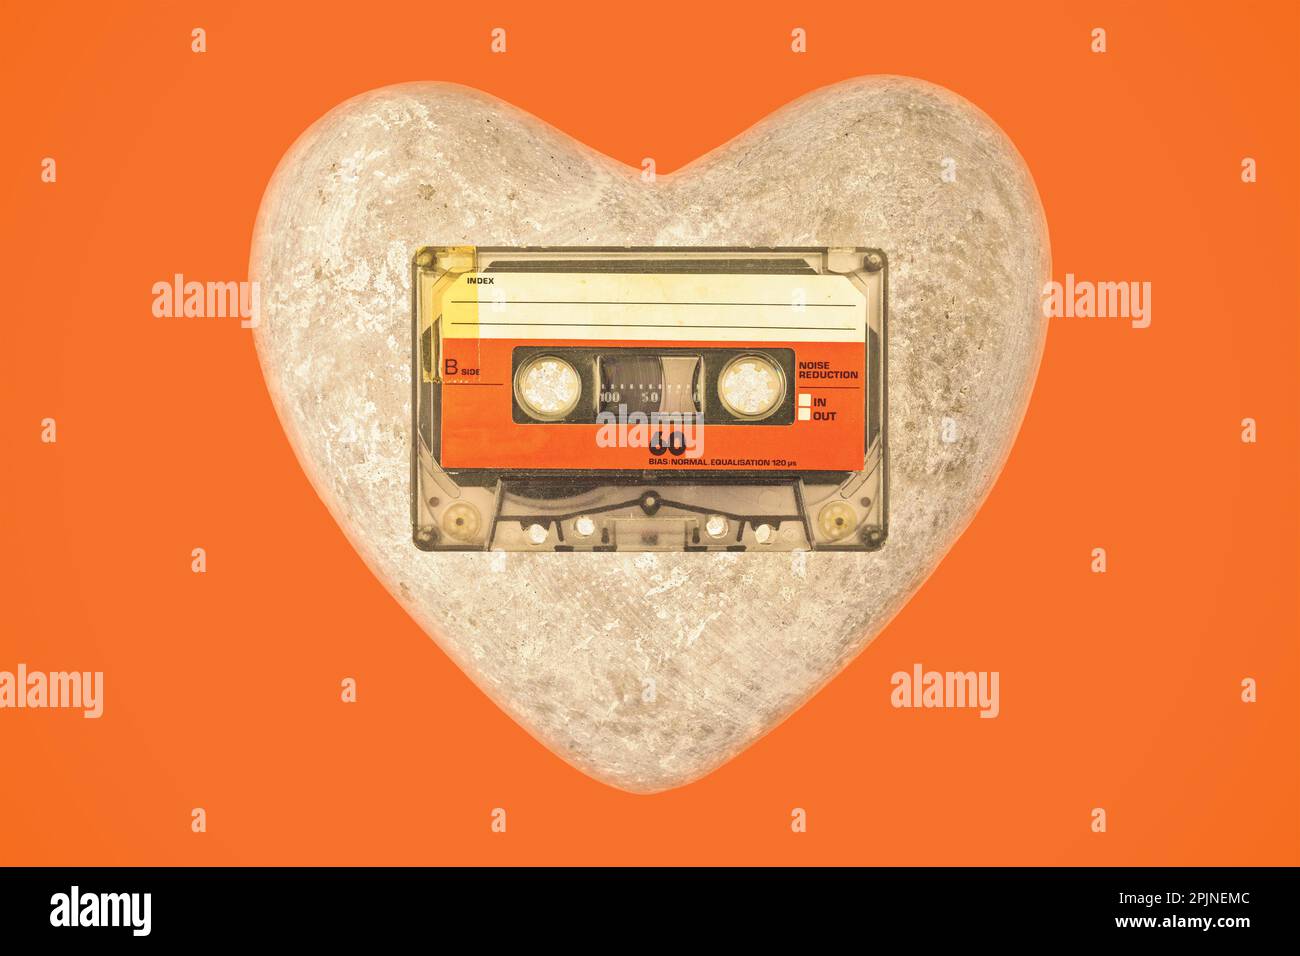 Cassette audio compacte vintage avec coeur sur fond orange Banque D'Images